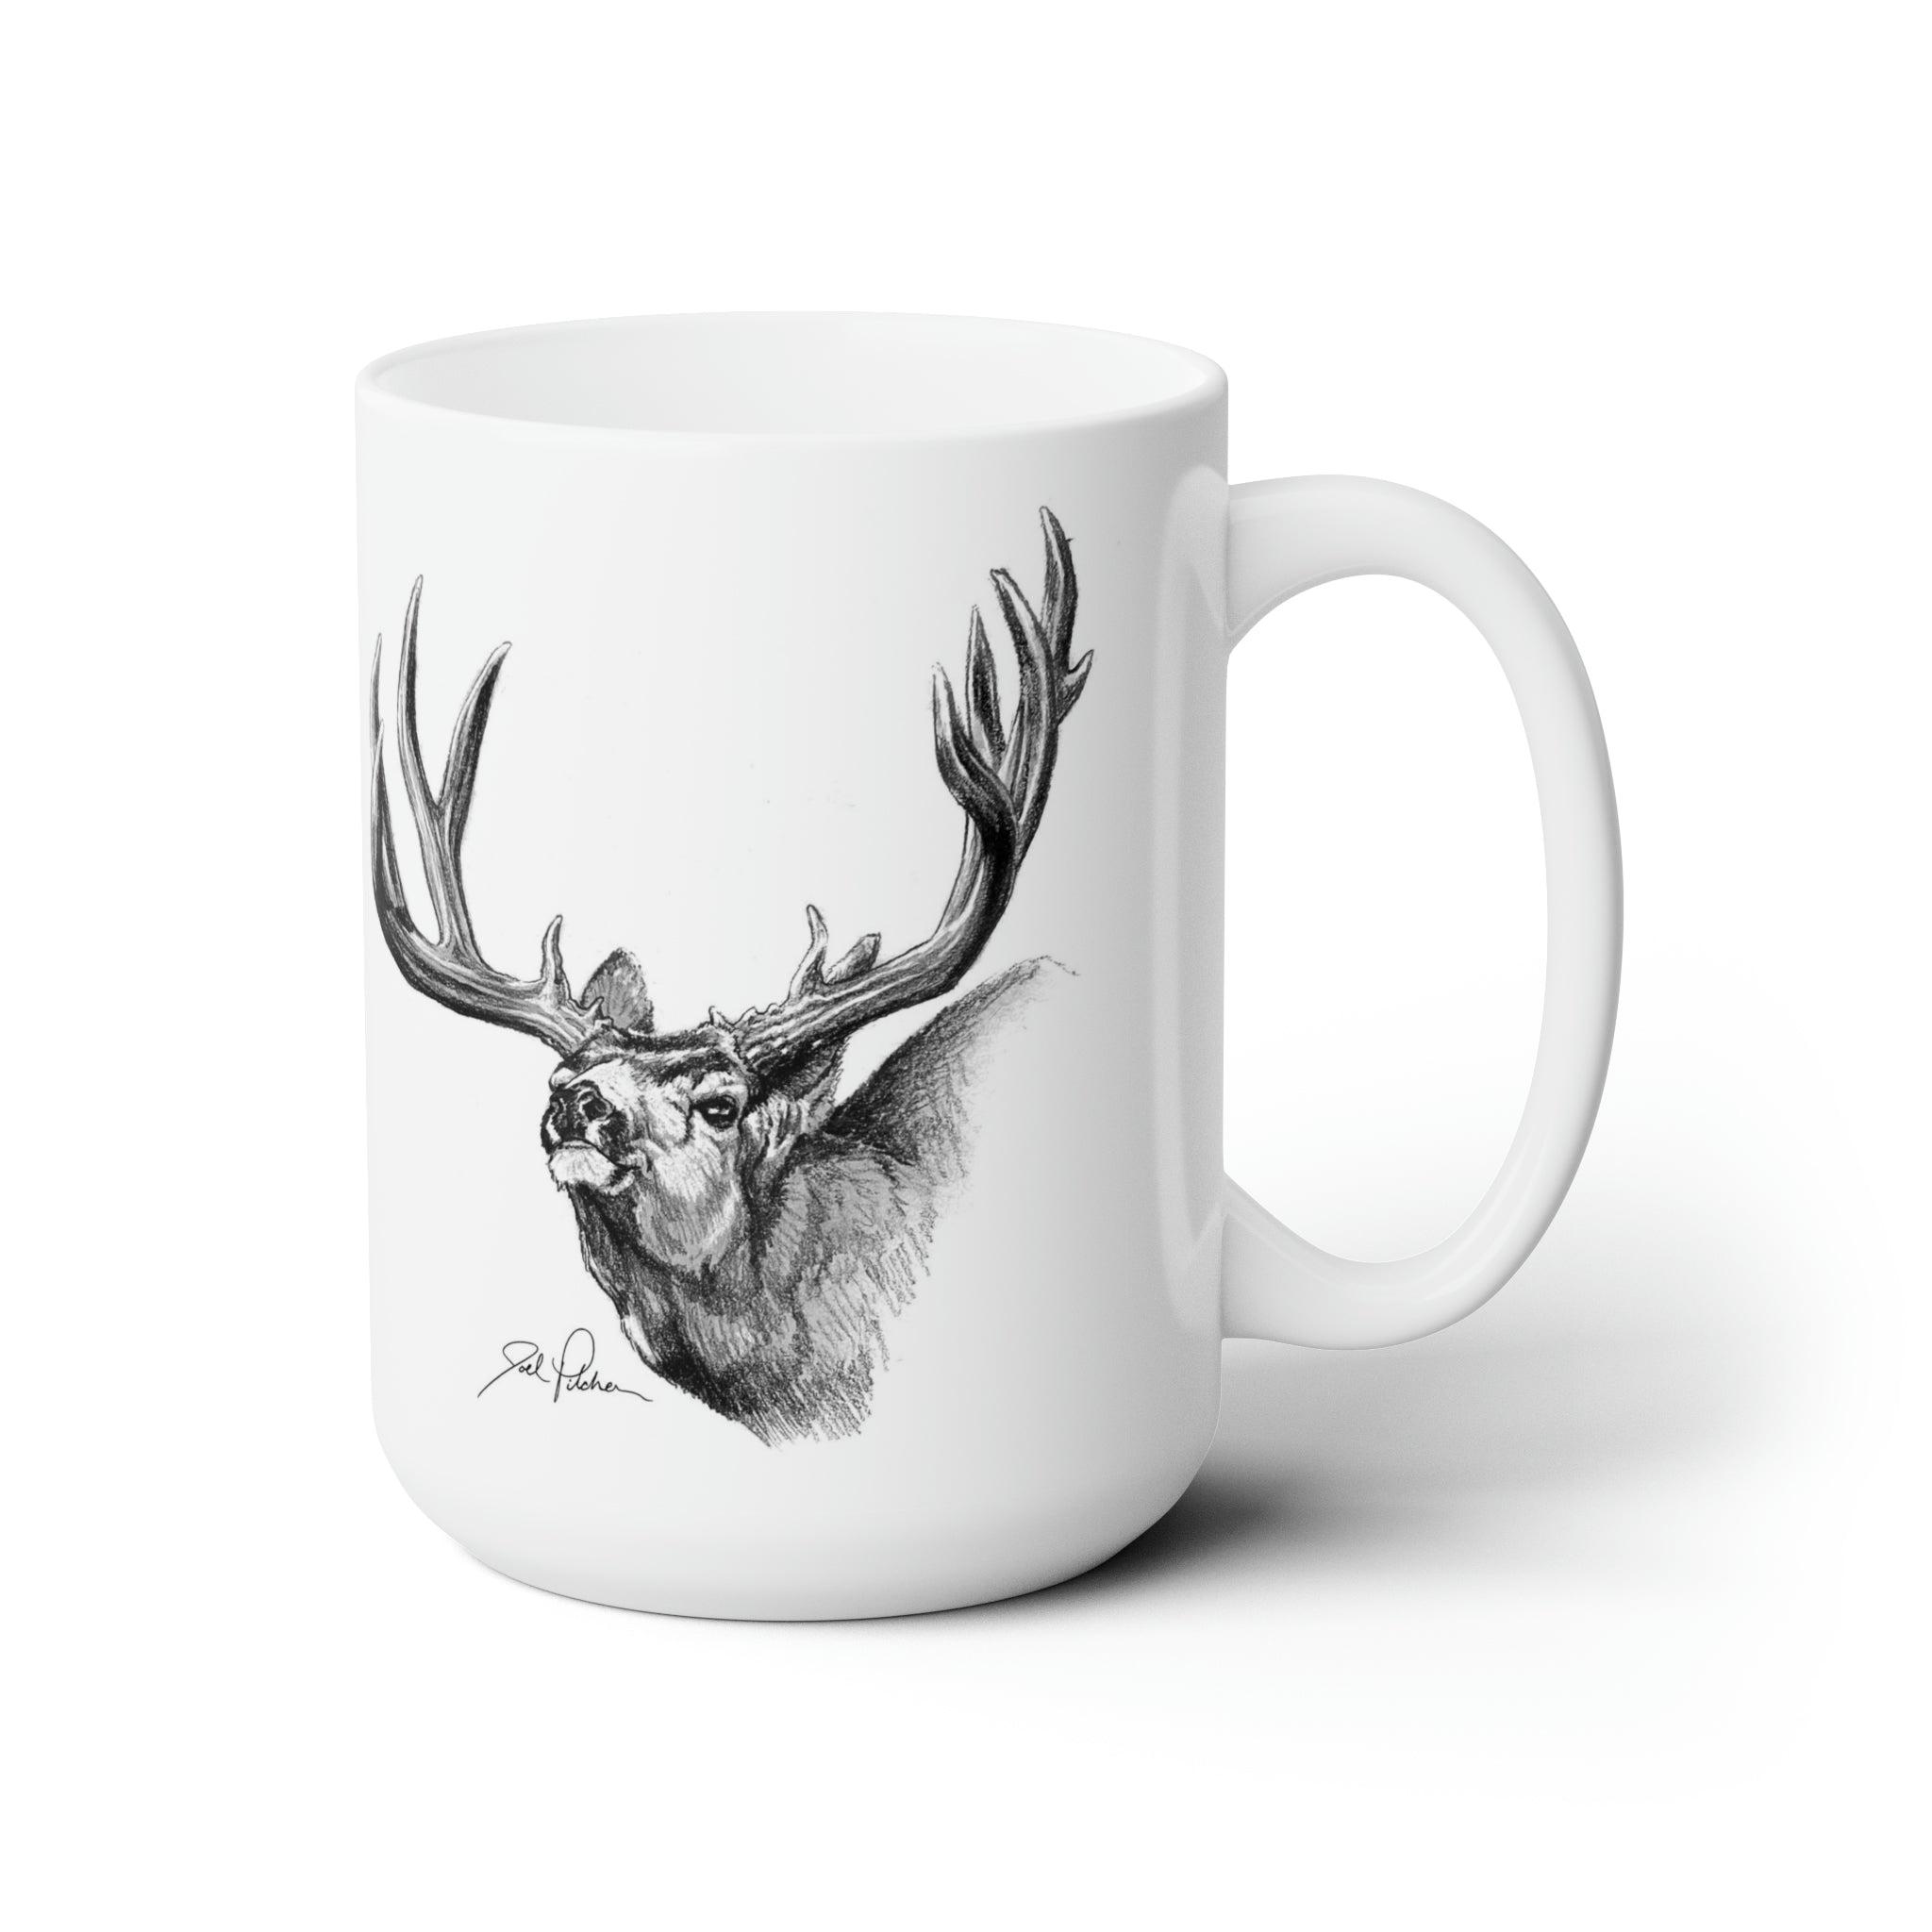 Mule Deer Sketch Mug